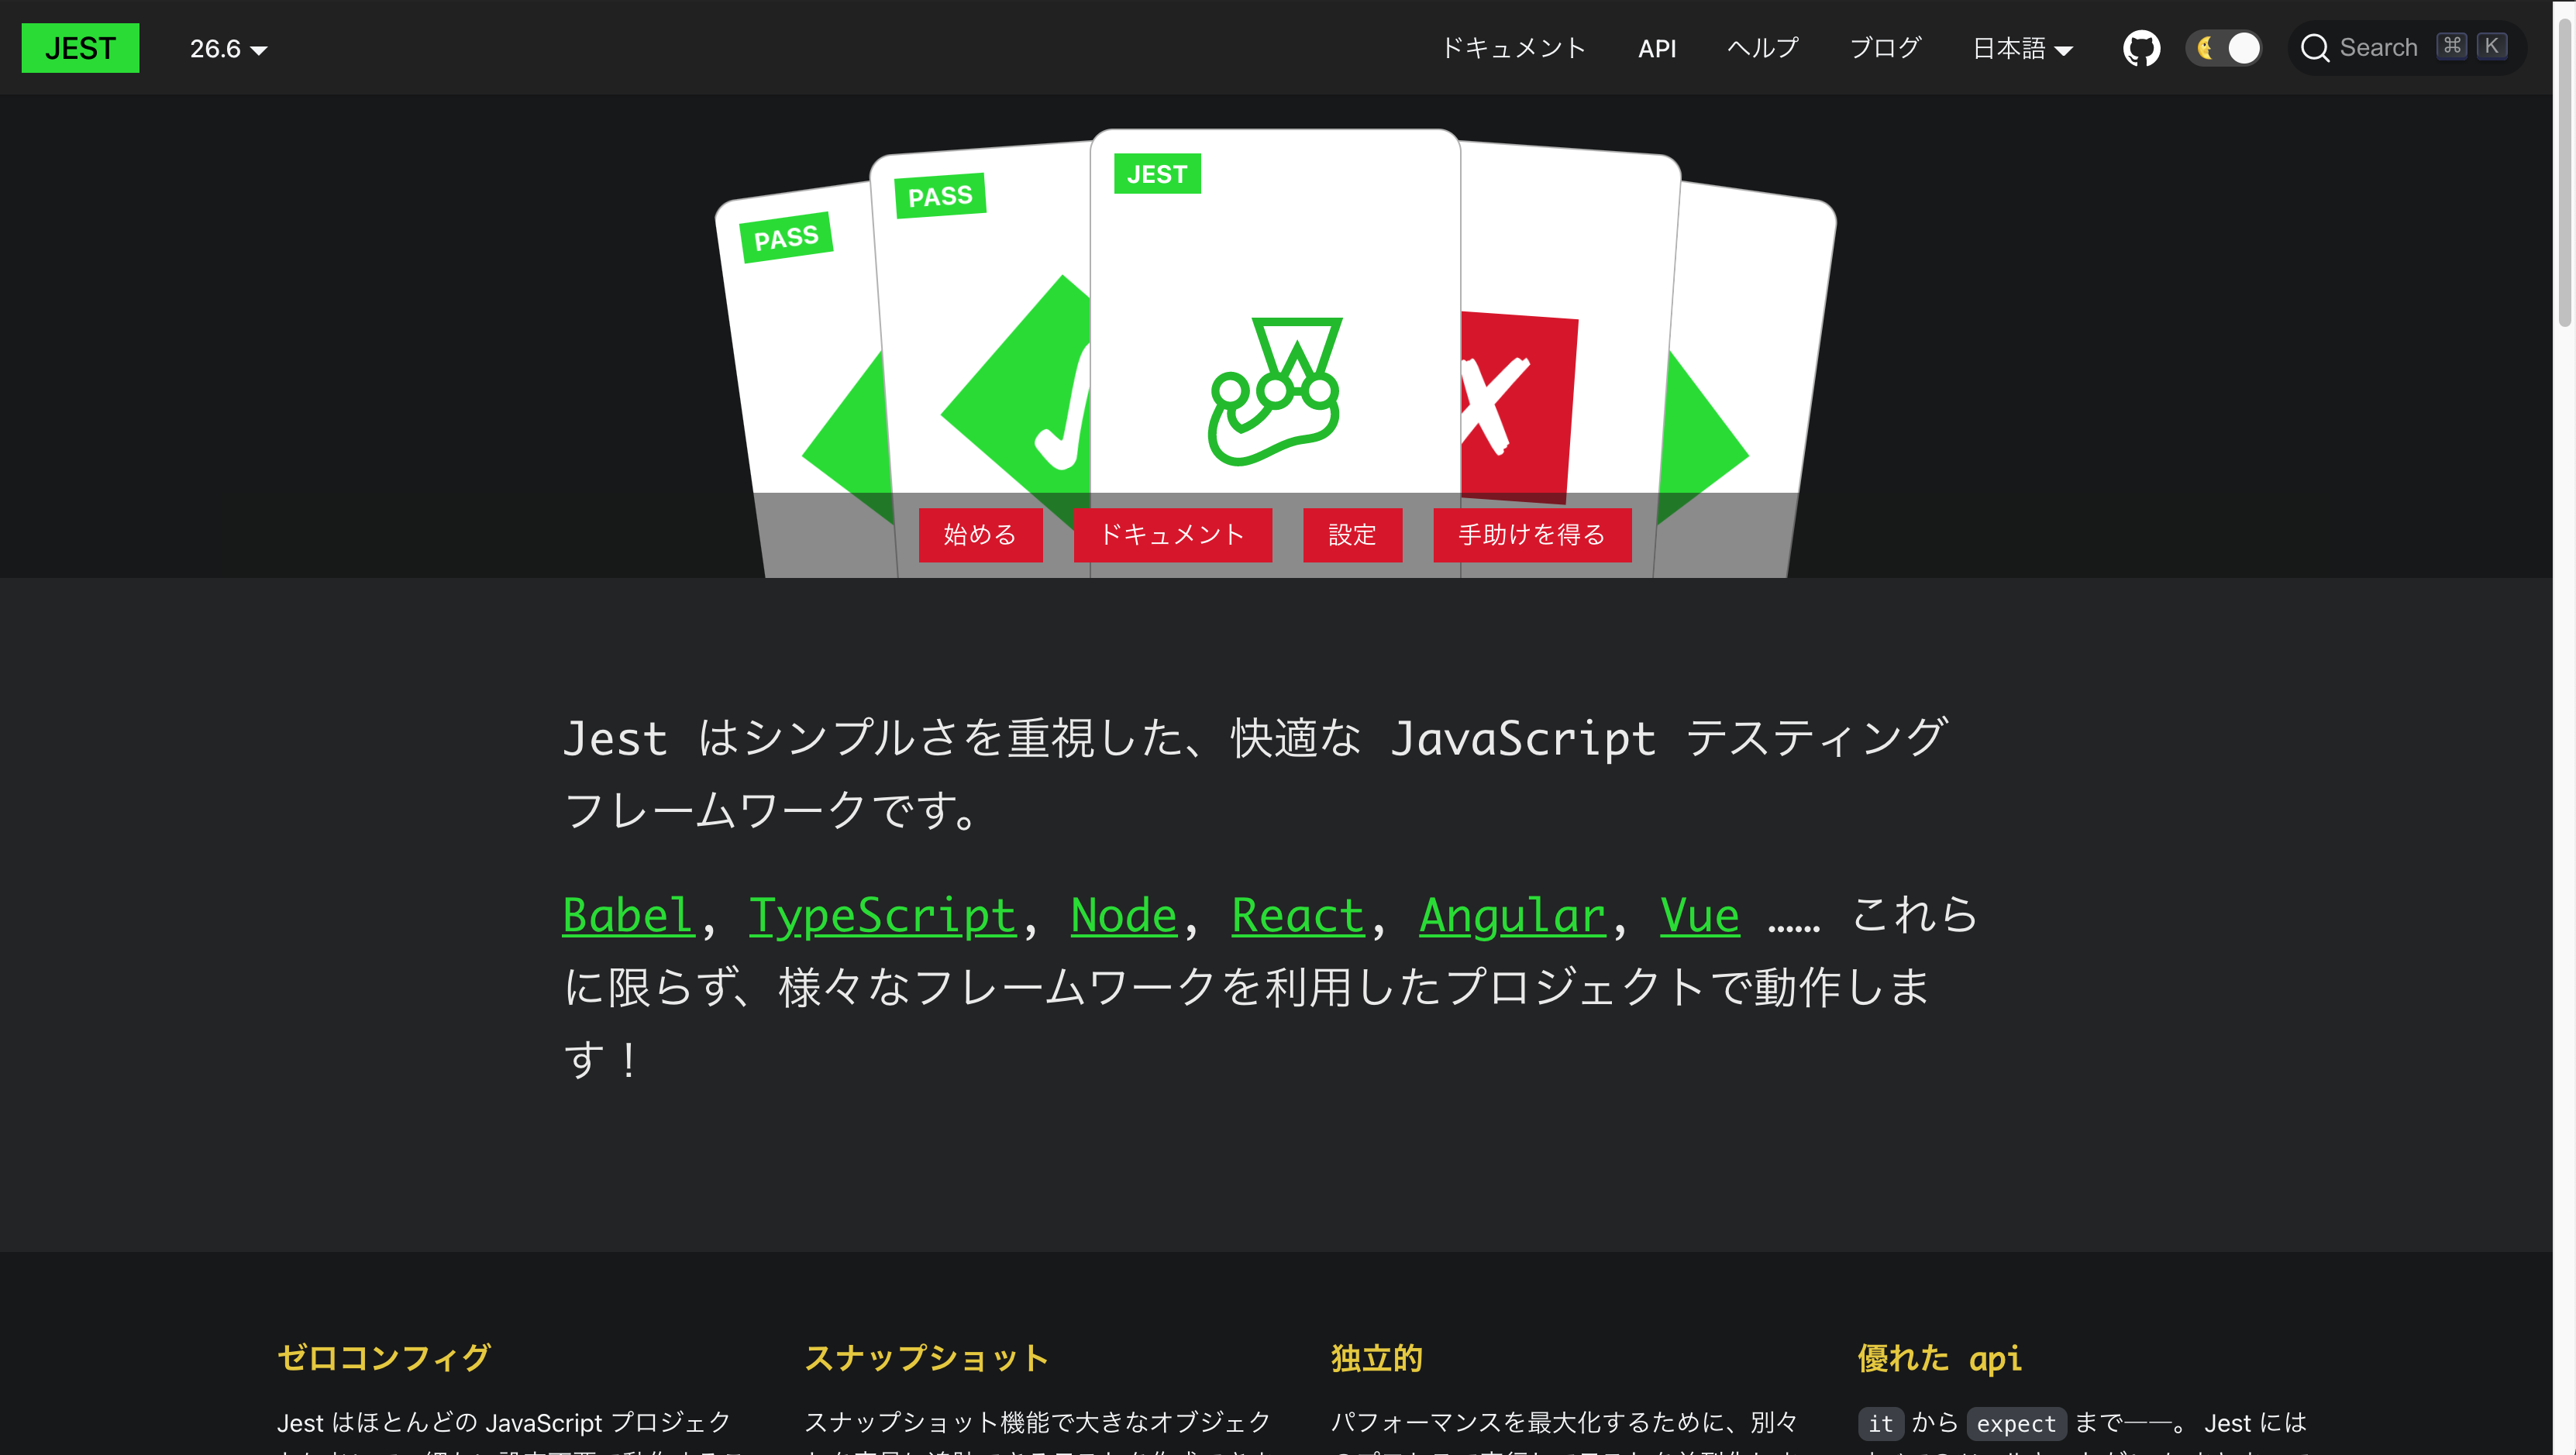 도큐사우루스 v2로 구축된 Jest의 새로운 일본어 웹사이트